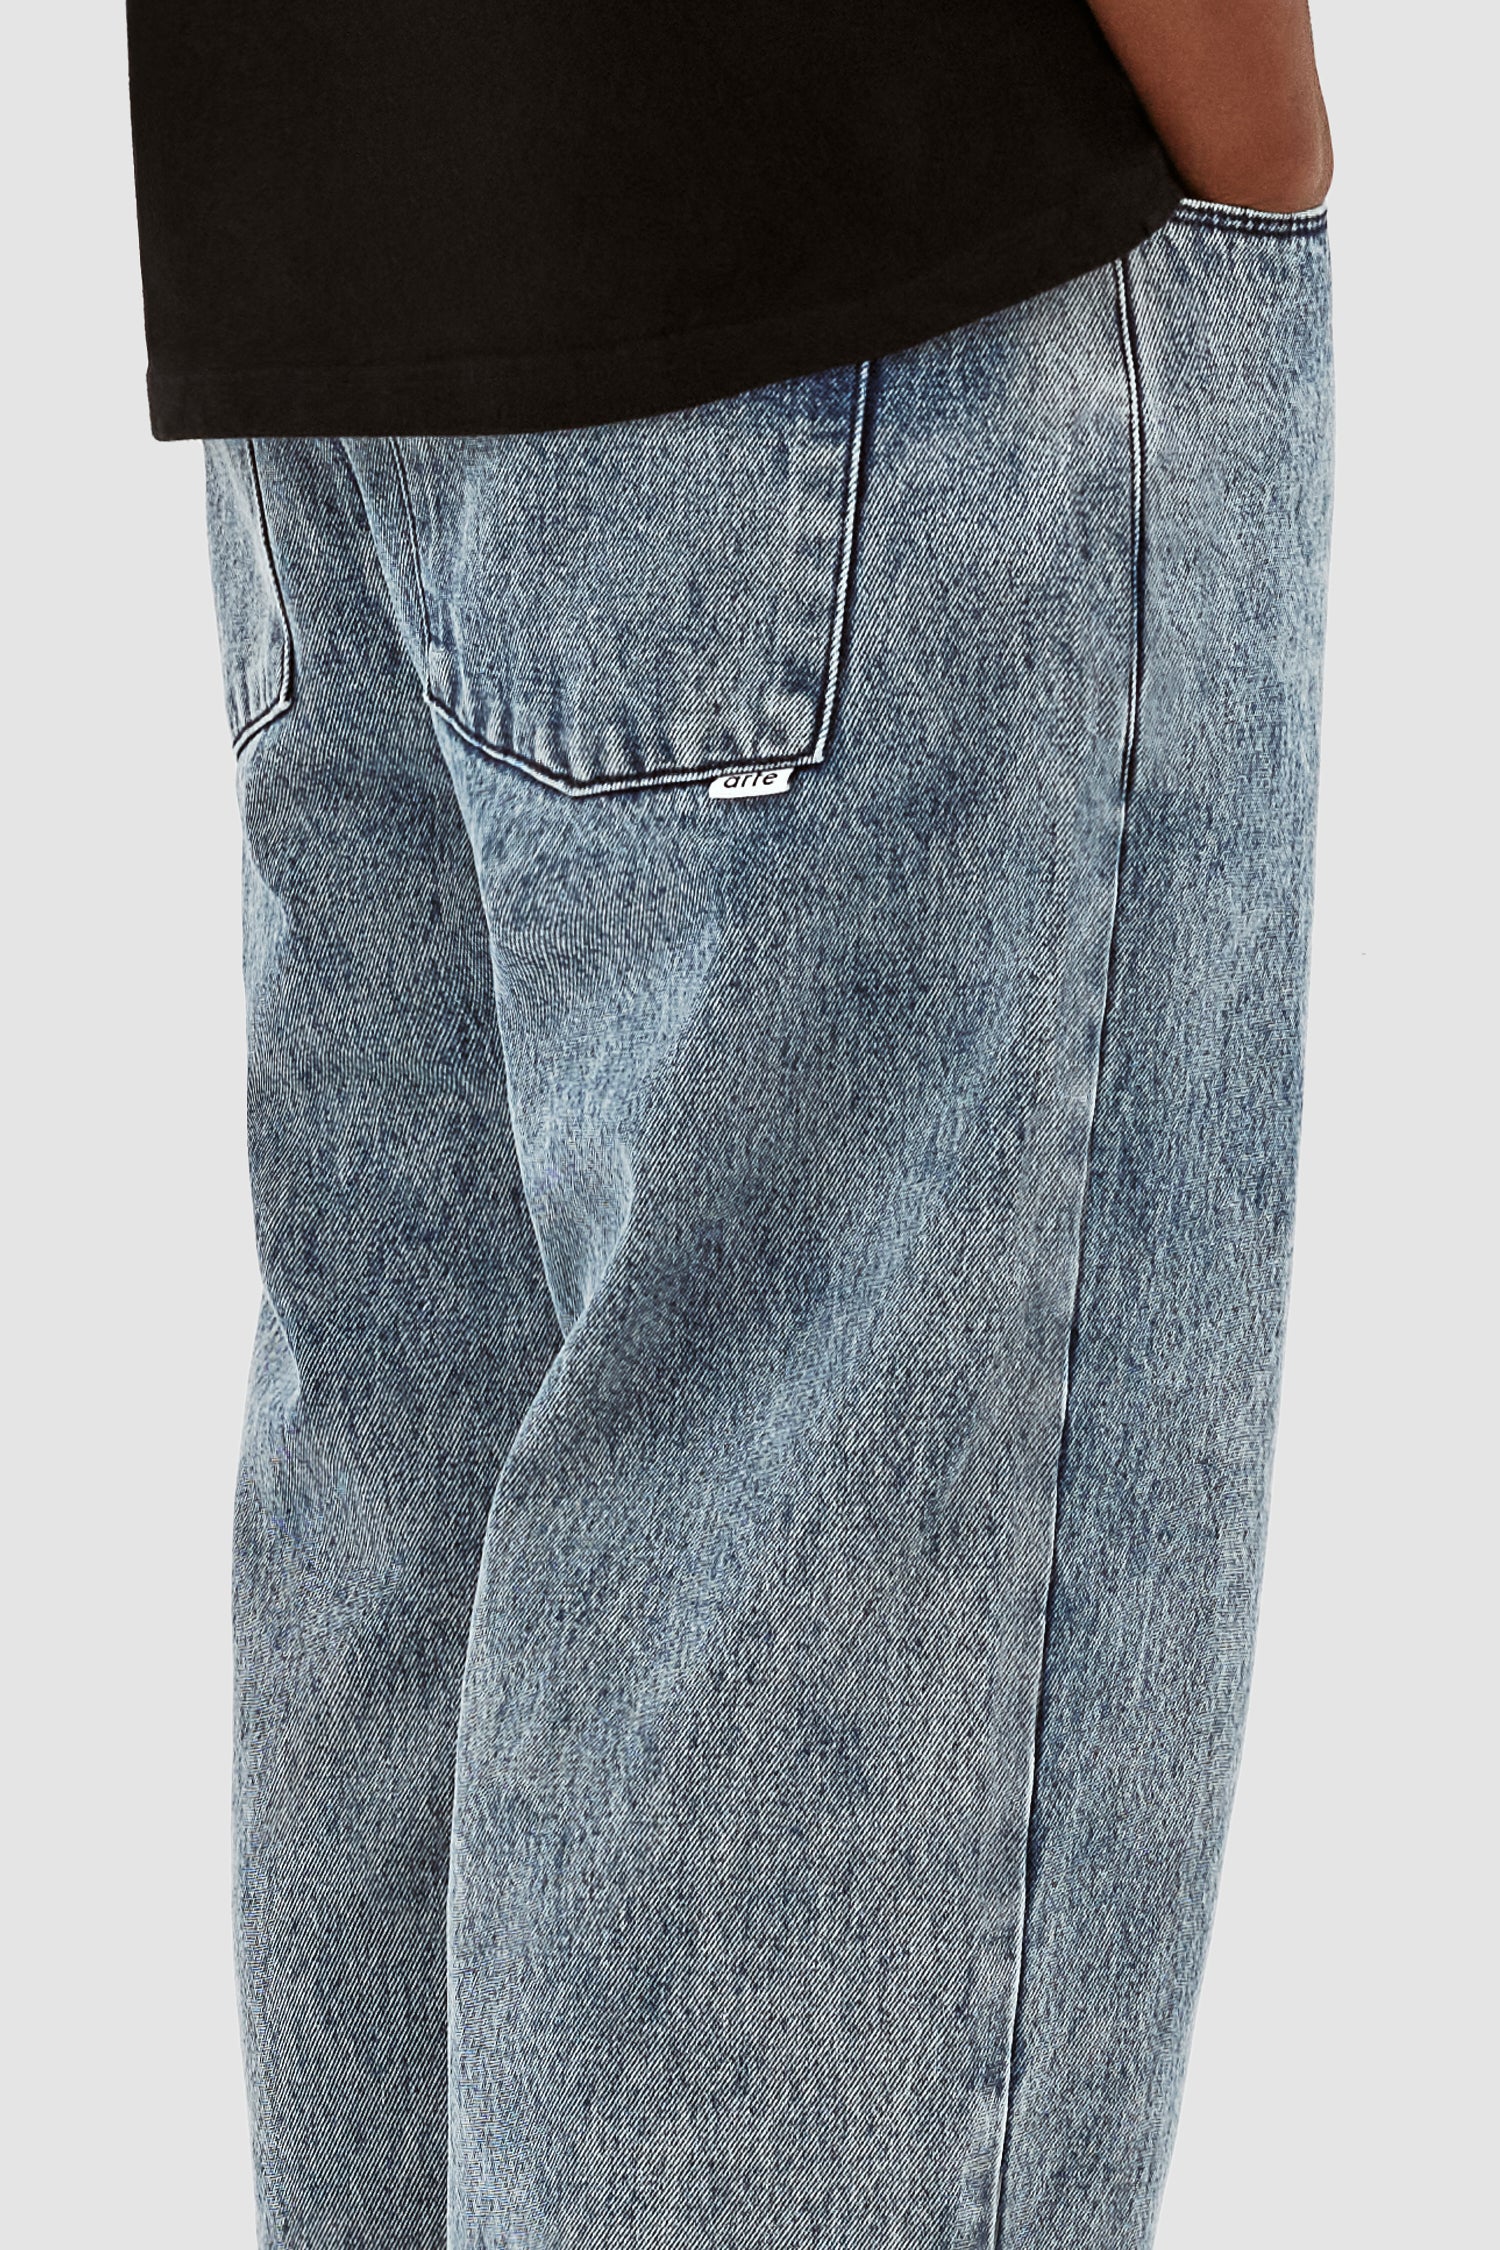 Poage Belt Detail Pants - Denim Vintage